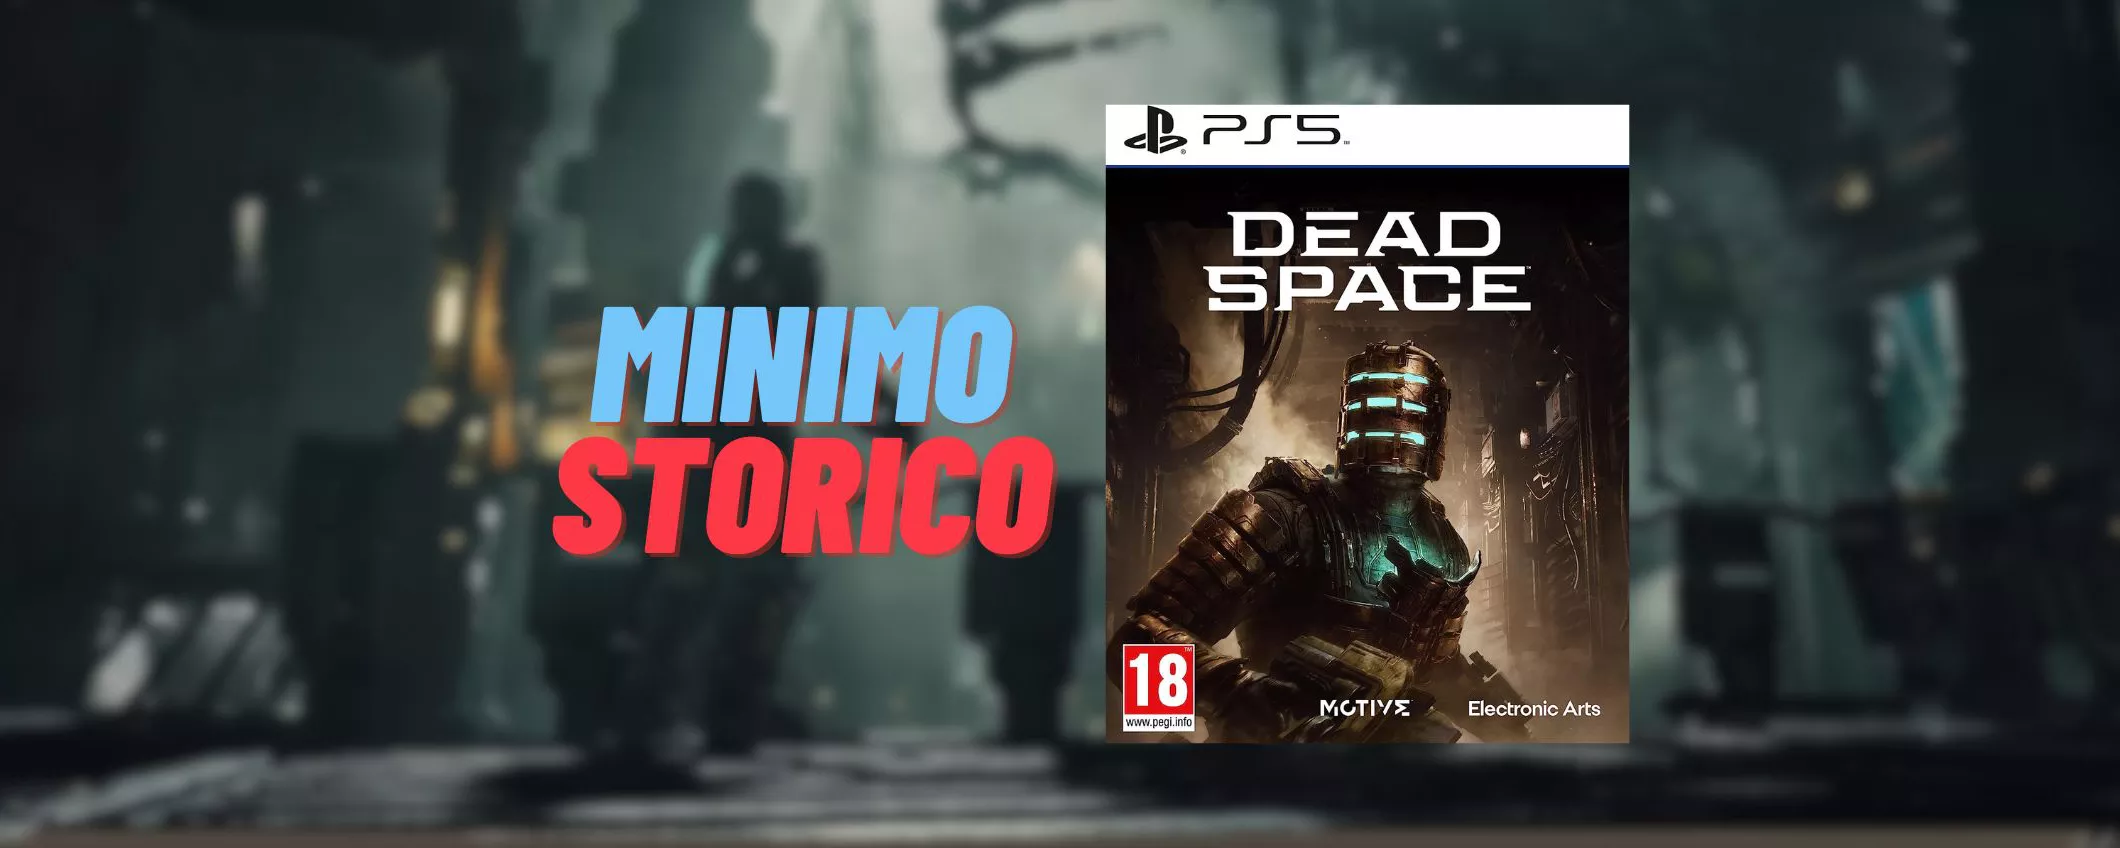 Dead Space per PS5 al MINIMO STORICO: oggi risparmi il 33% - Melablog